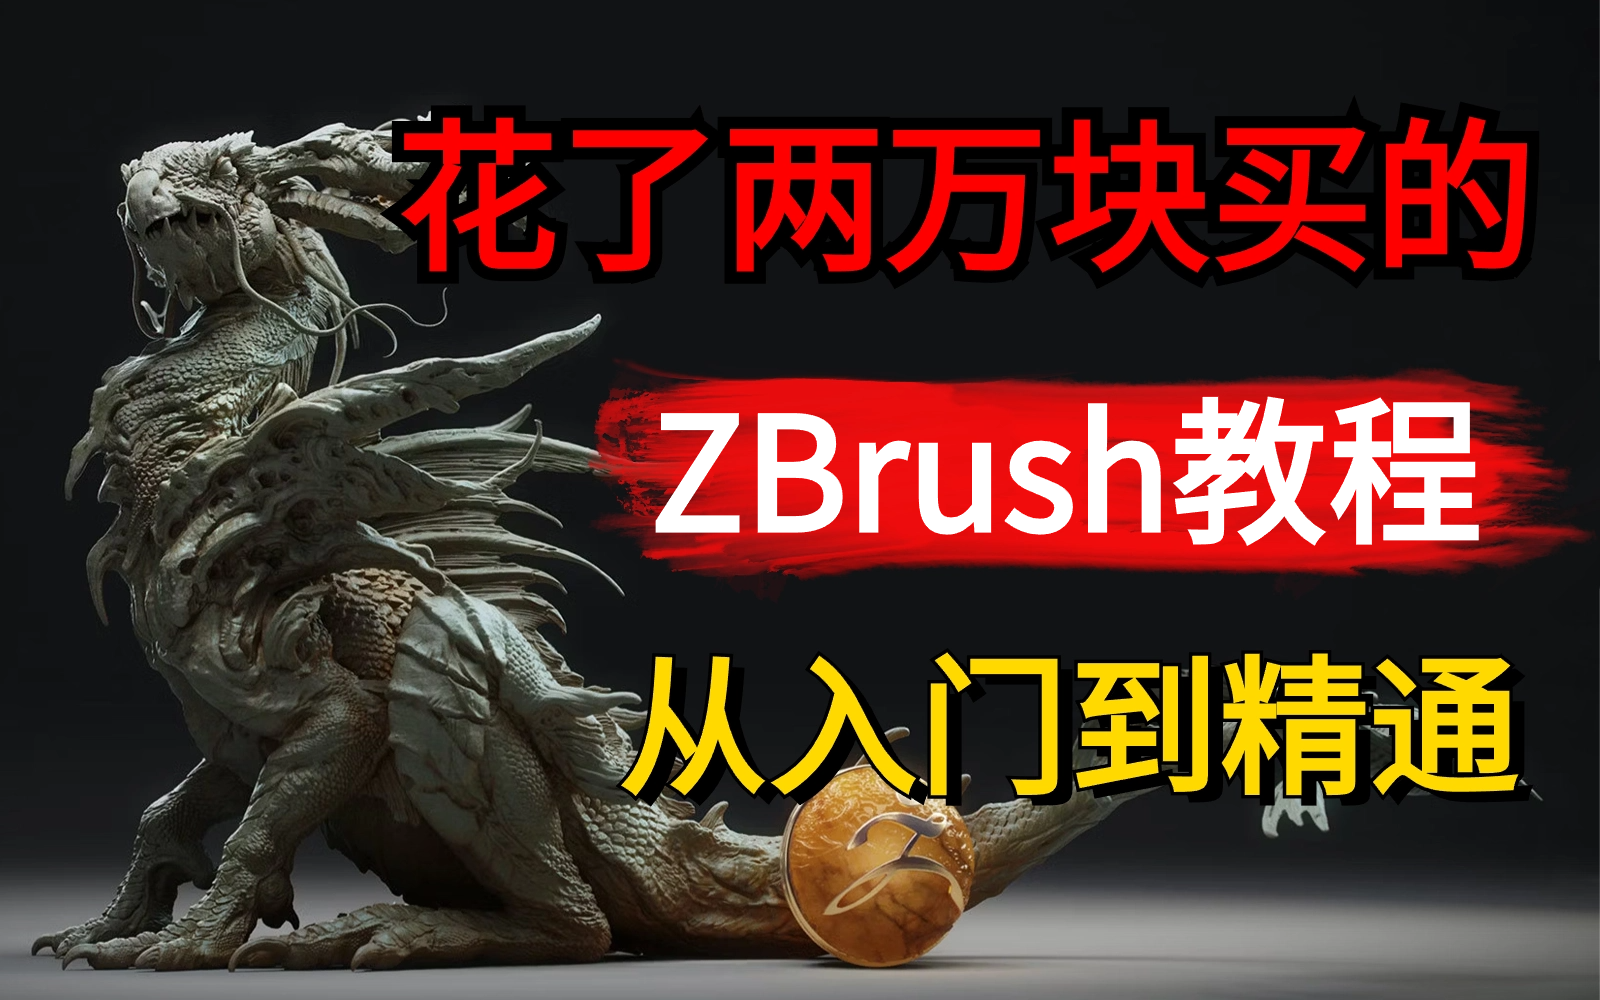 【ZBrush教程】全300集，花了两万买的ZBrush教程，血赚！zbrush从入门到精通，全程干货无废话，学不会我退出建模圈！